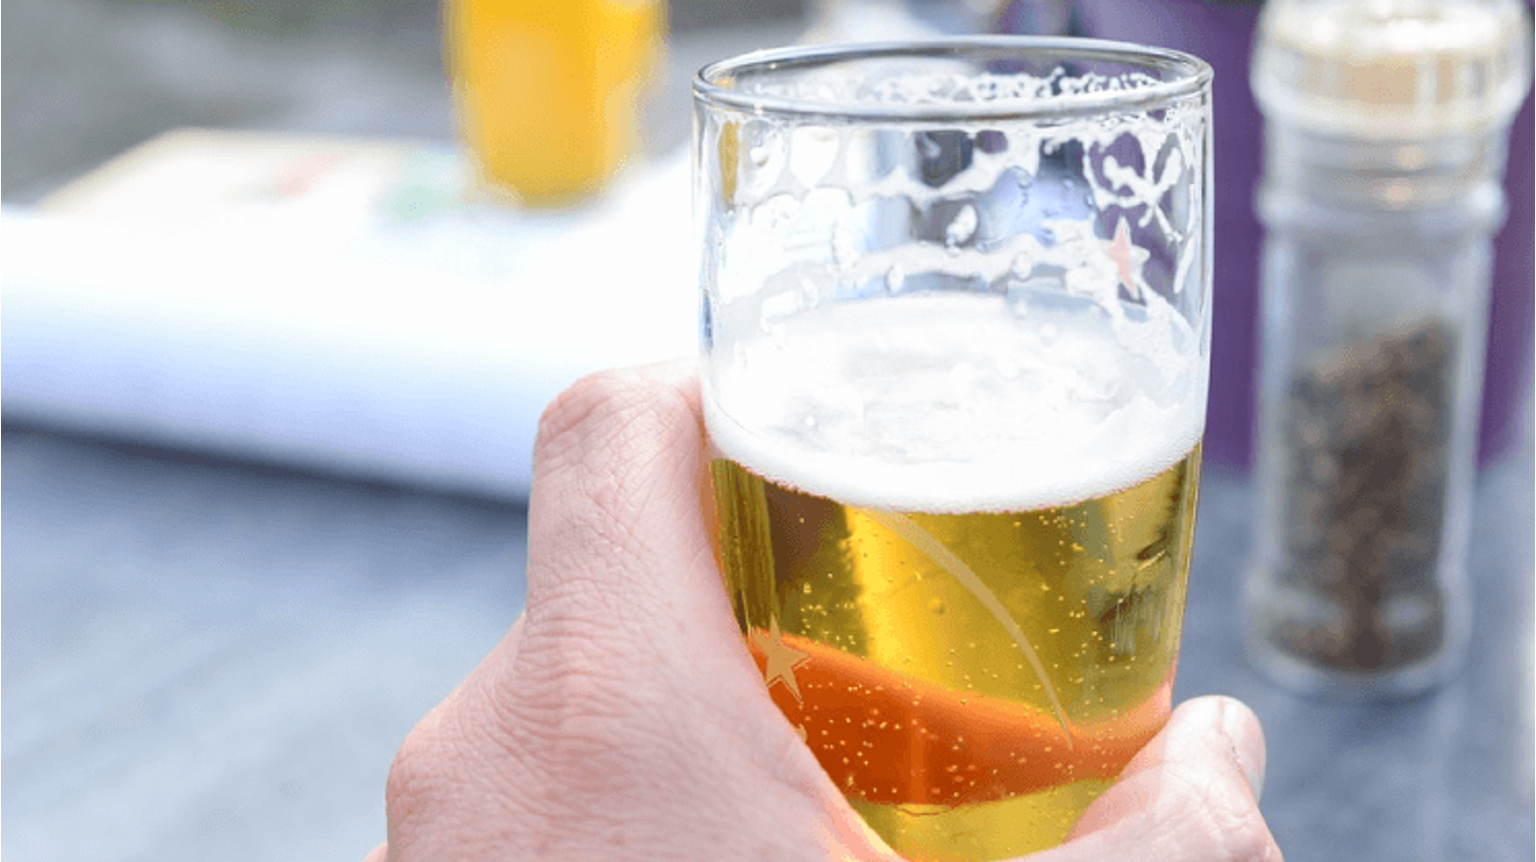 thumbnail for blog article named: Wat is alcoholvrij bier precies en wat zijn de voordelen?